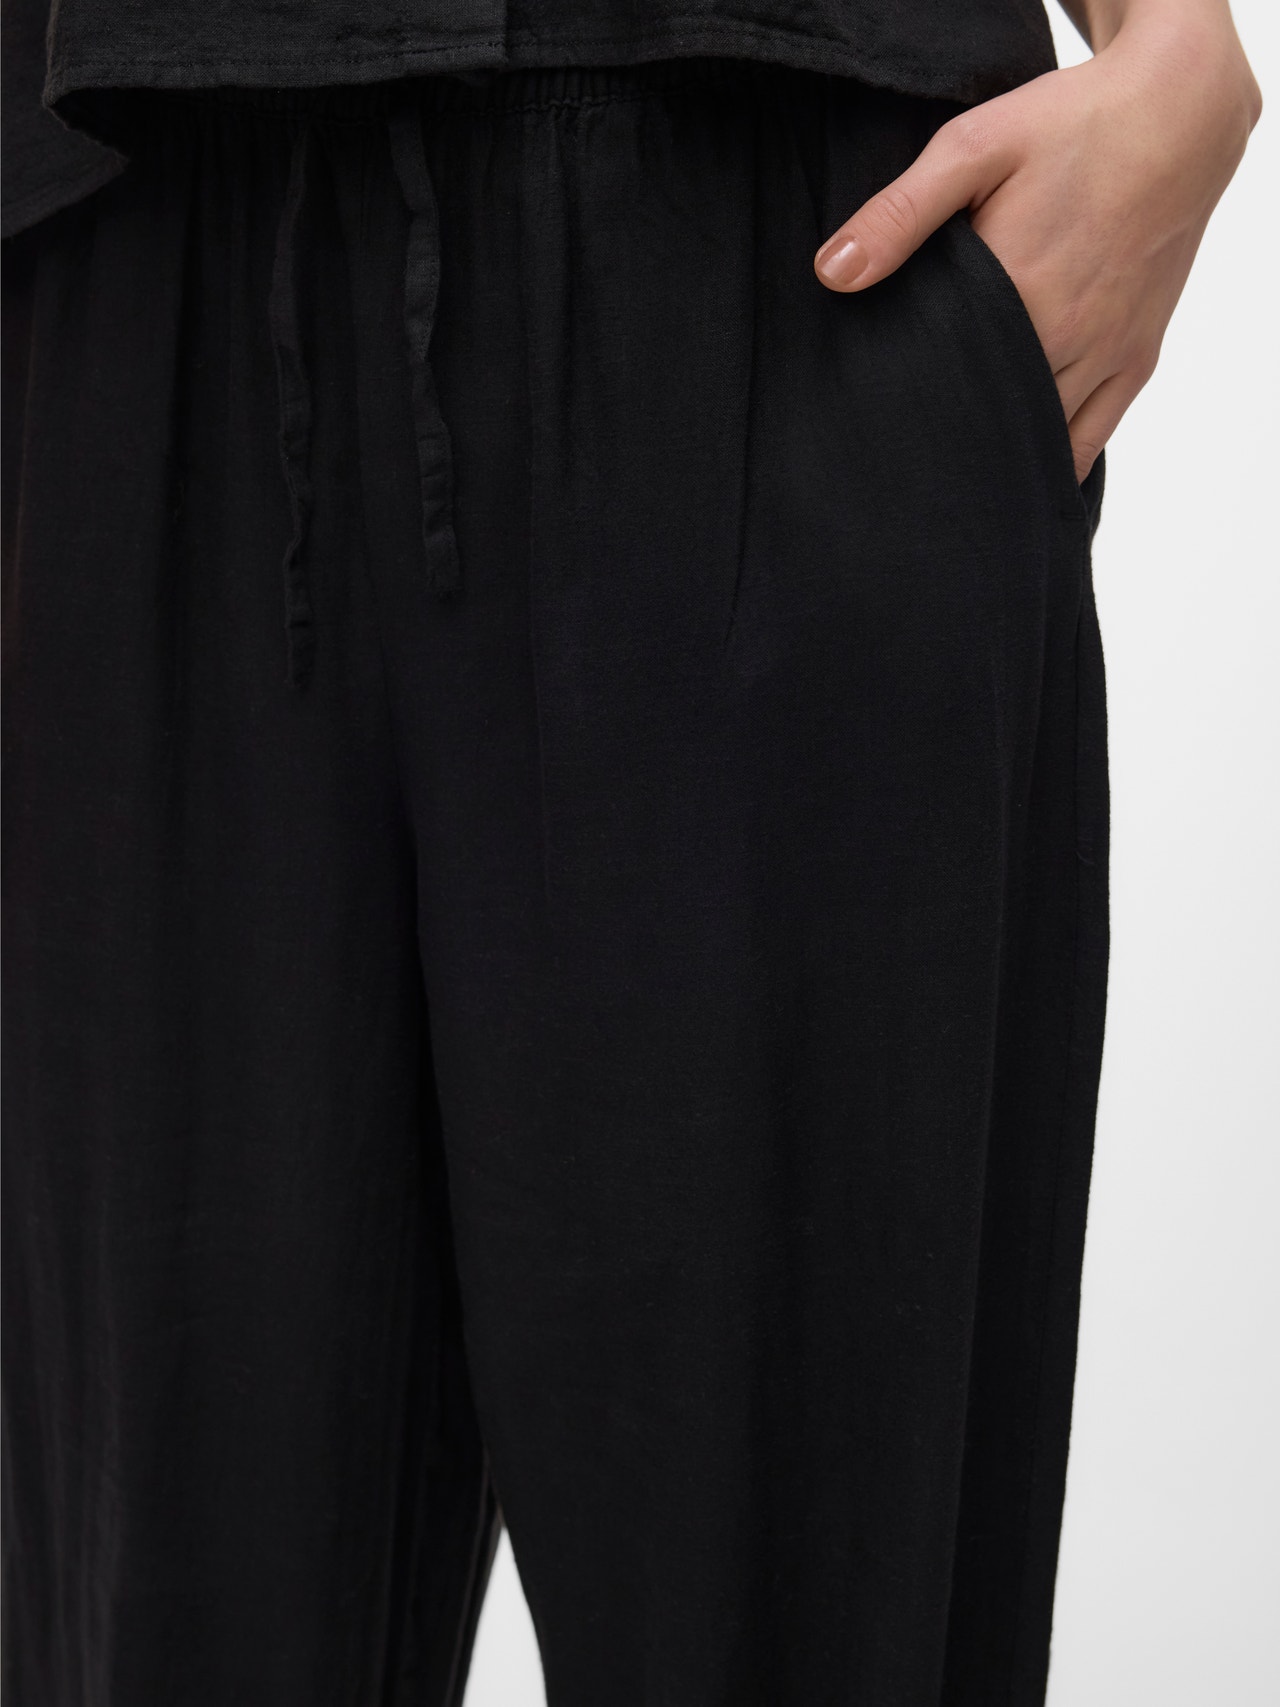 Vero Moda VMLINN Trousers -Black - 10305091